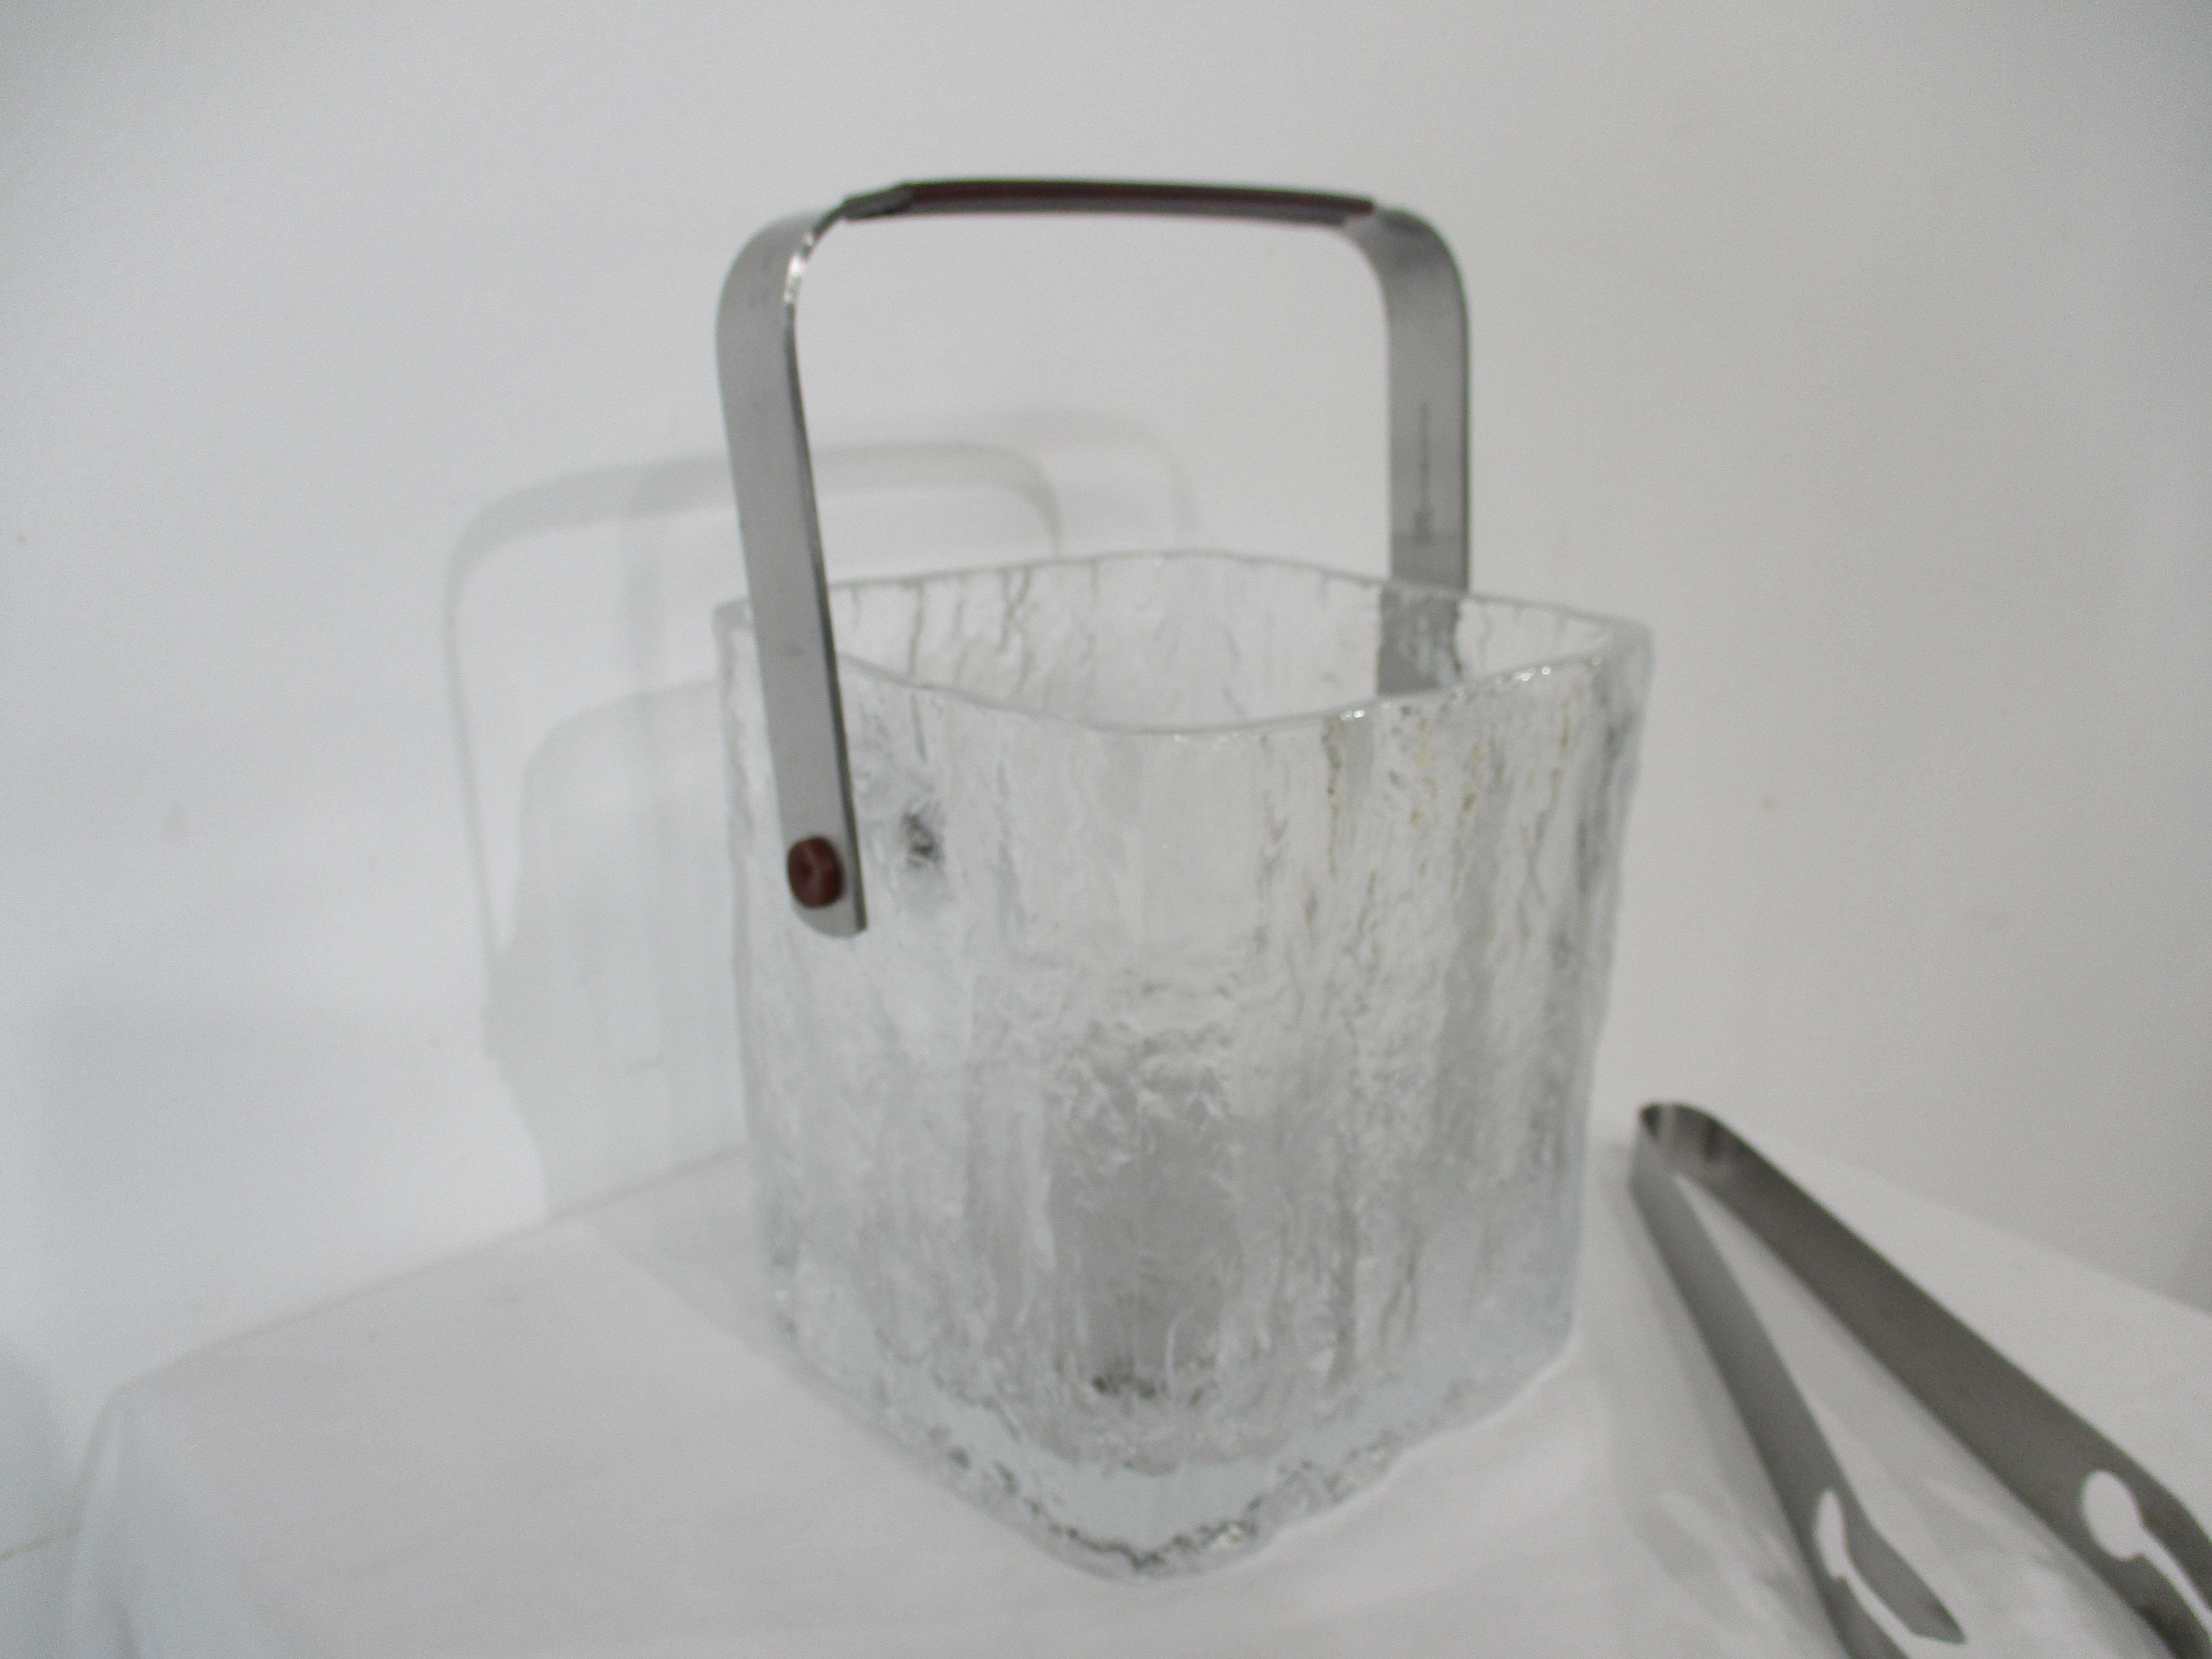 Seau à glace en verre moulé de style glacier avec l'aspect de la glace gelée , avec une poignée en acier inoxydable , une pince assortie et une passoire inférieure . La taille parfaite pour un bar encastré ou un comptoir, fabriquée au Japon par la